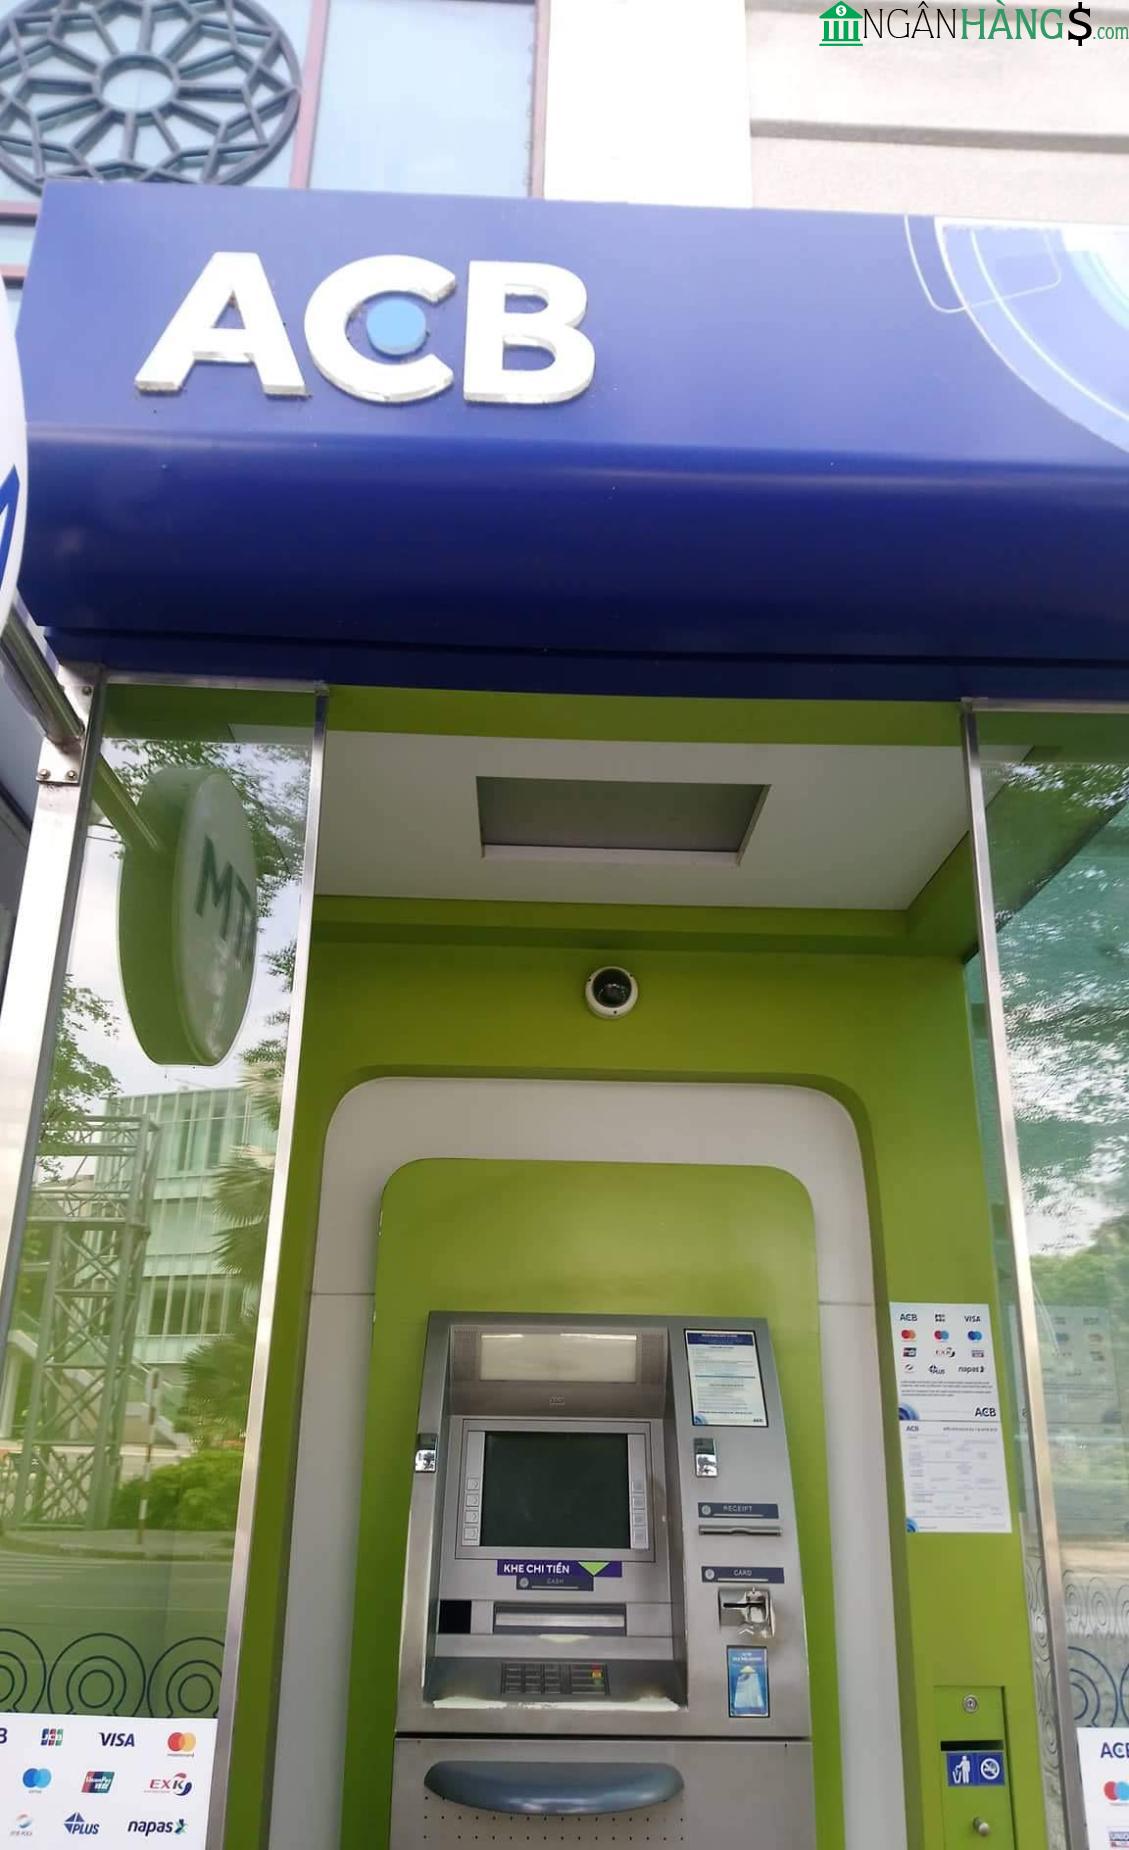 Ảnh Cây ATM ngân hàng Á Châu ACB Sở Quy Hoạch Kiến Trúc 1